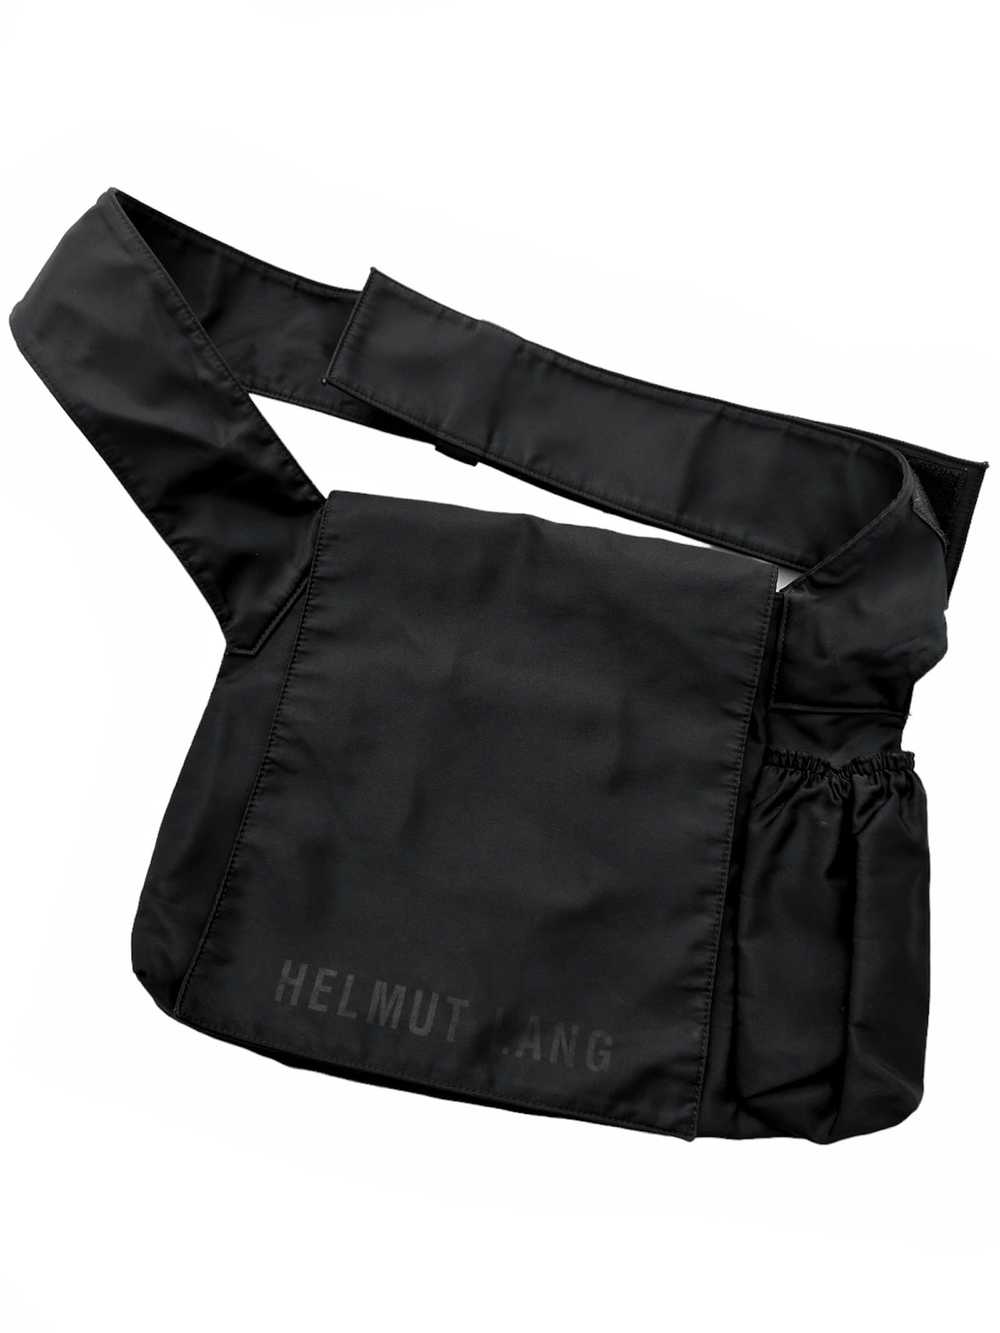 Helmut Lang Archive Nylon Shoulder Multi Bag - image 2